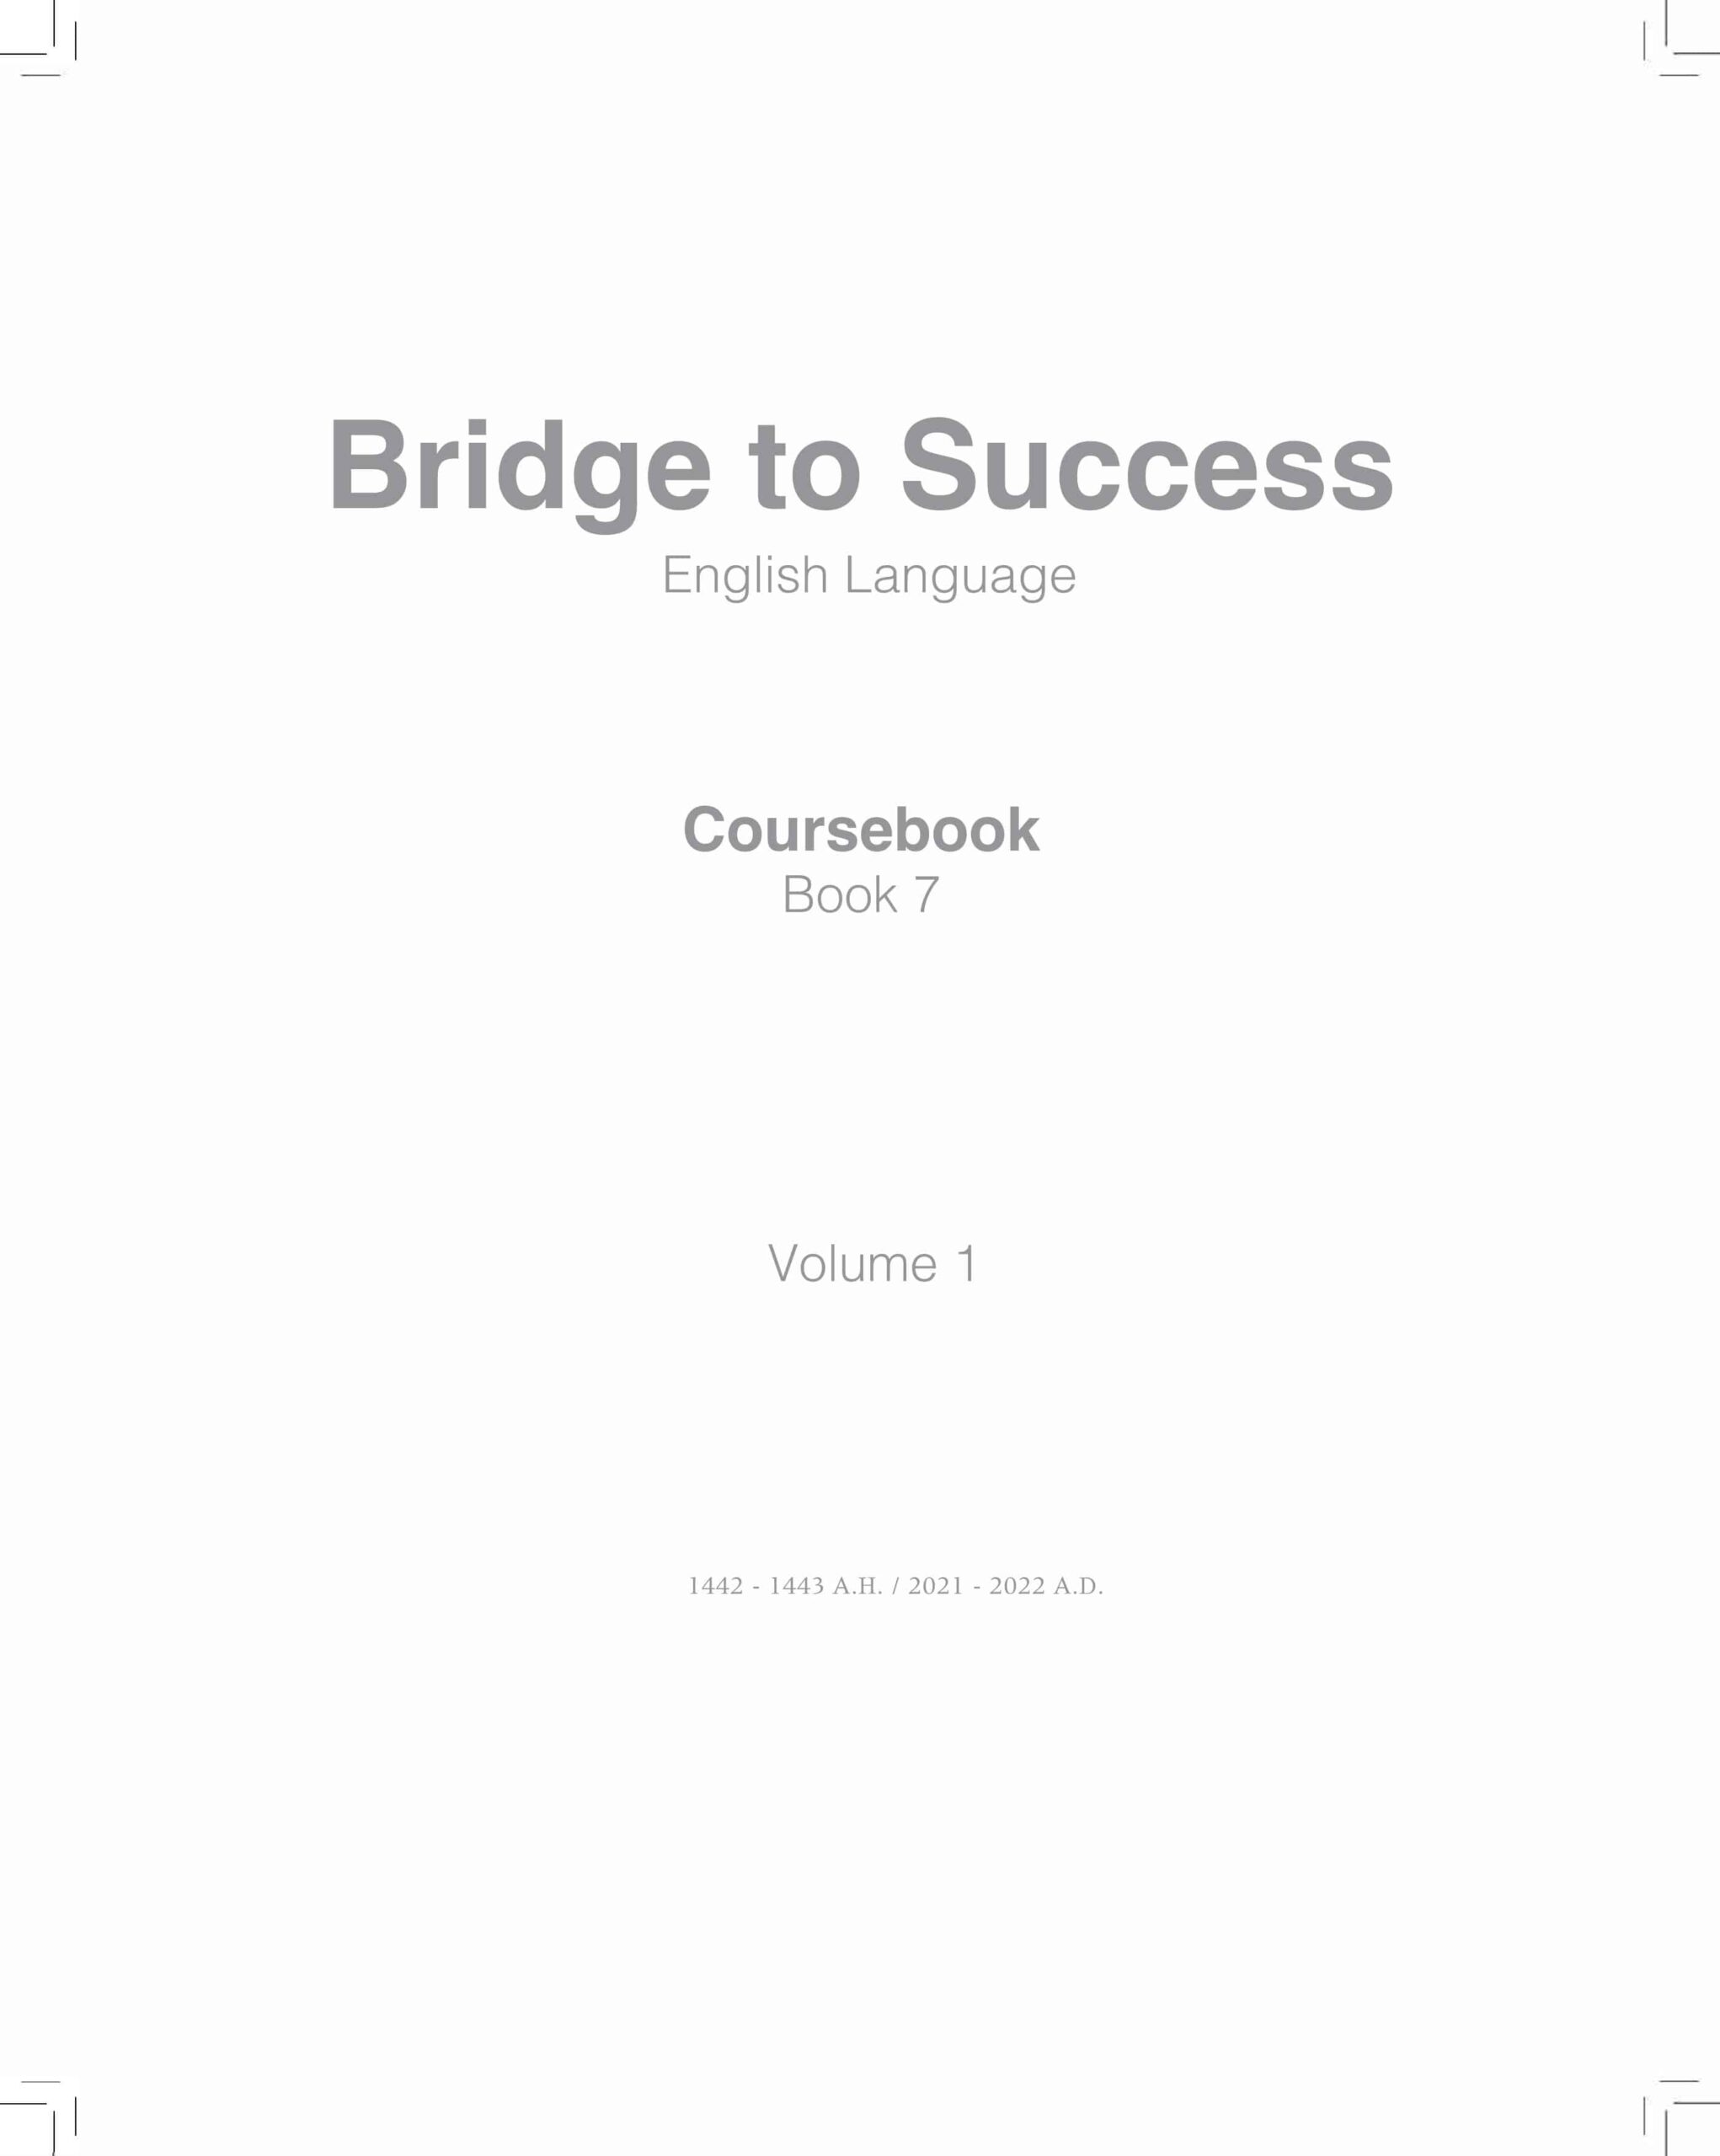 كتاب الطالب Course book اللغة الإنجليزية الصف السابع الفصل الدراسي الأول 2021-2022